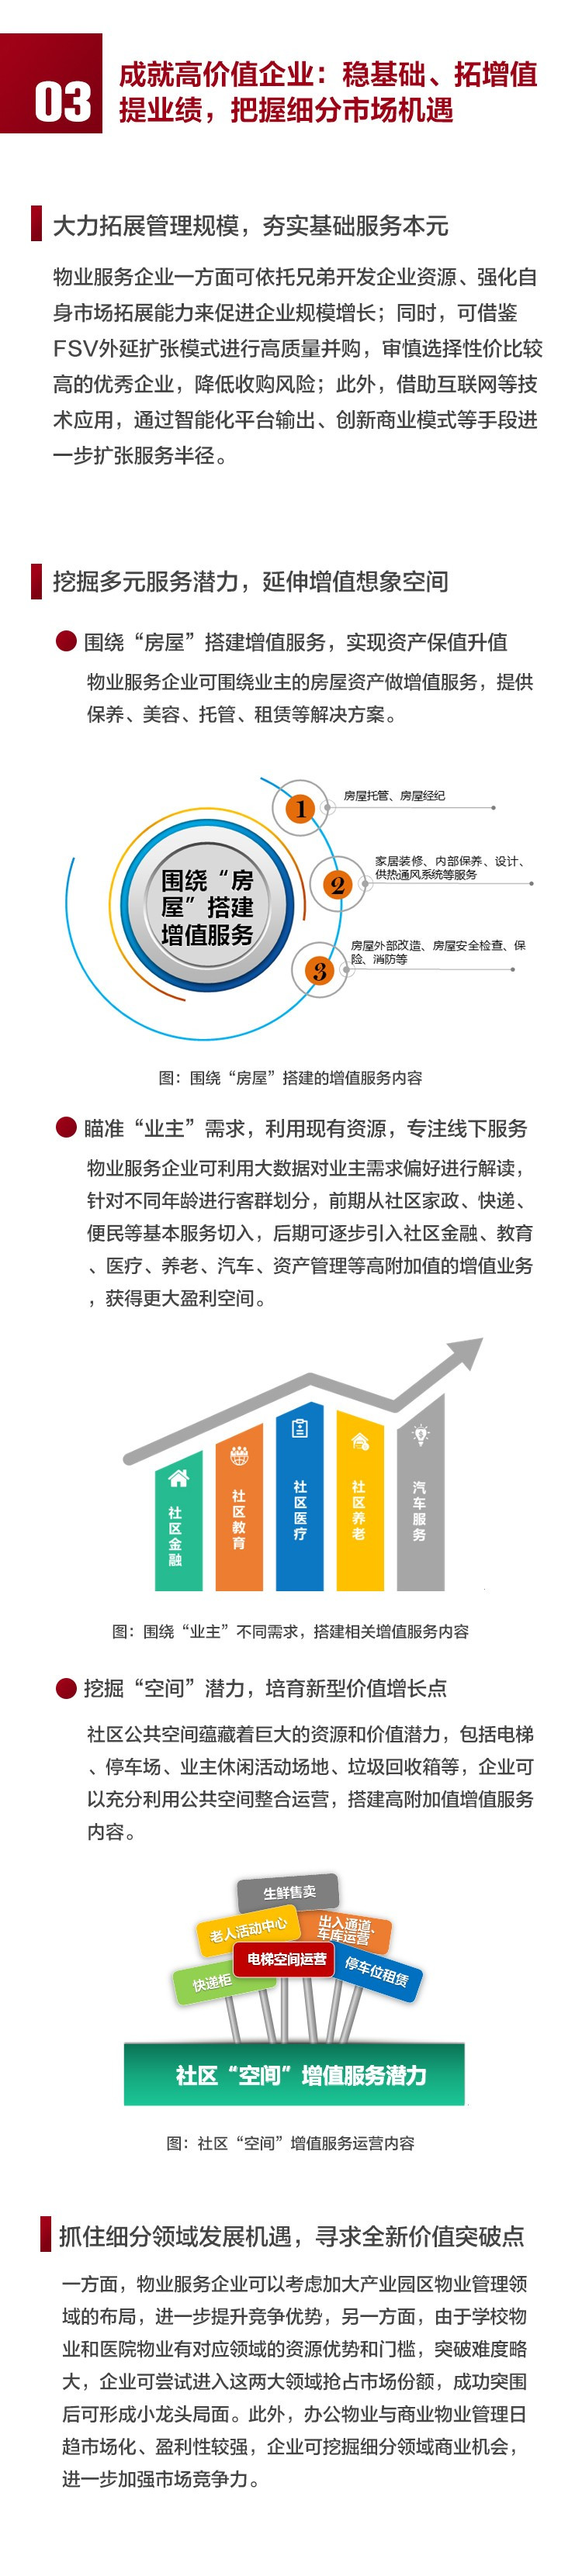 2019中国物业服务百强企业排行榜重磅发布